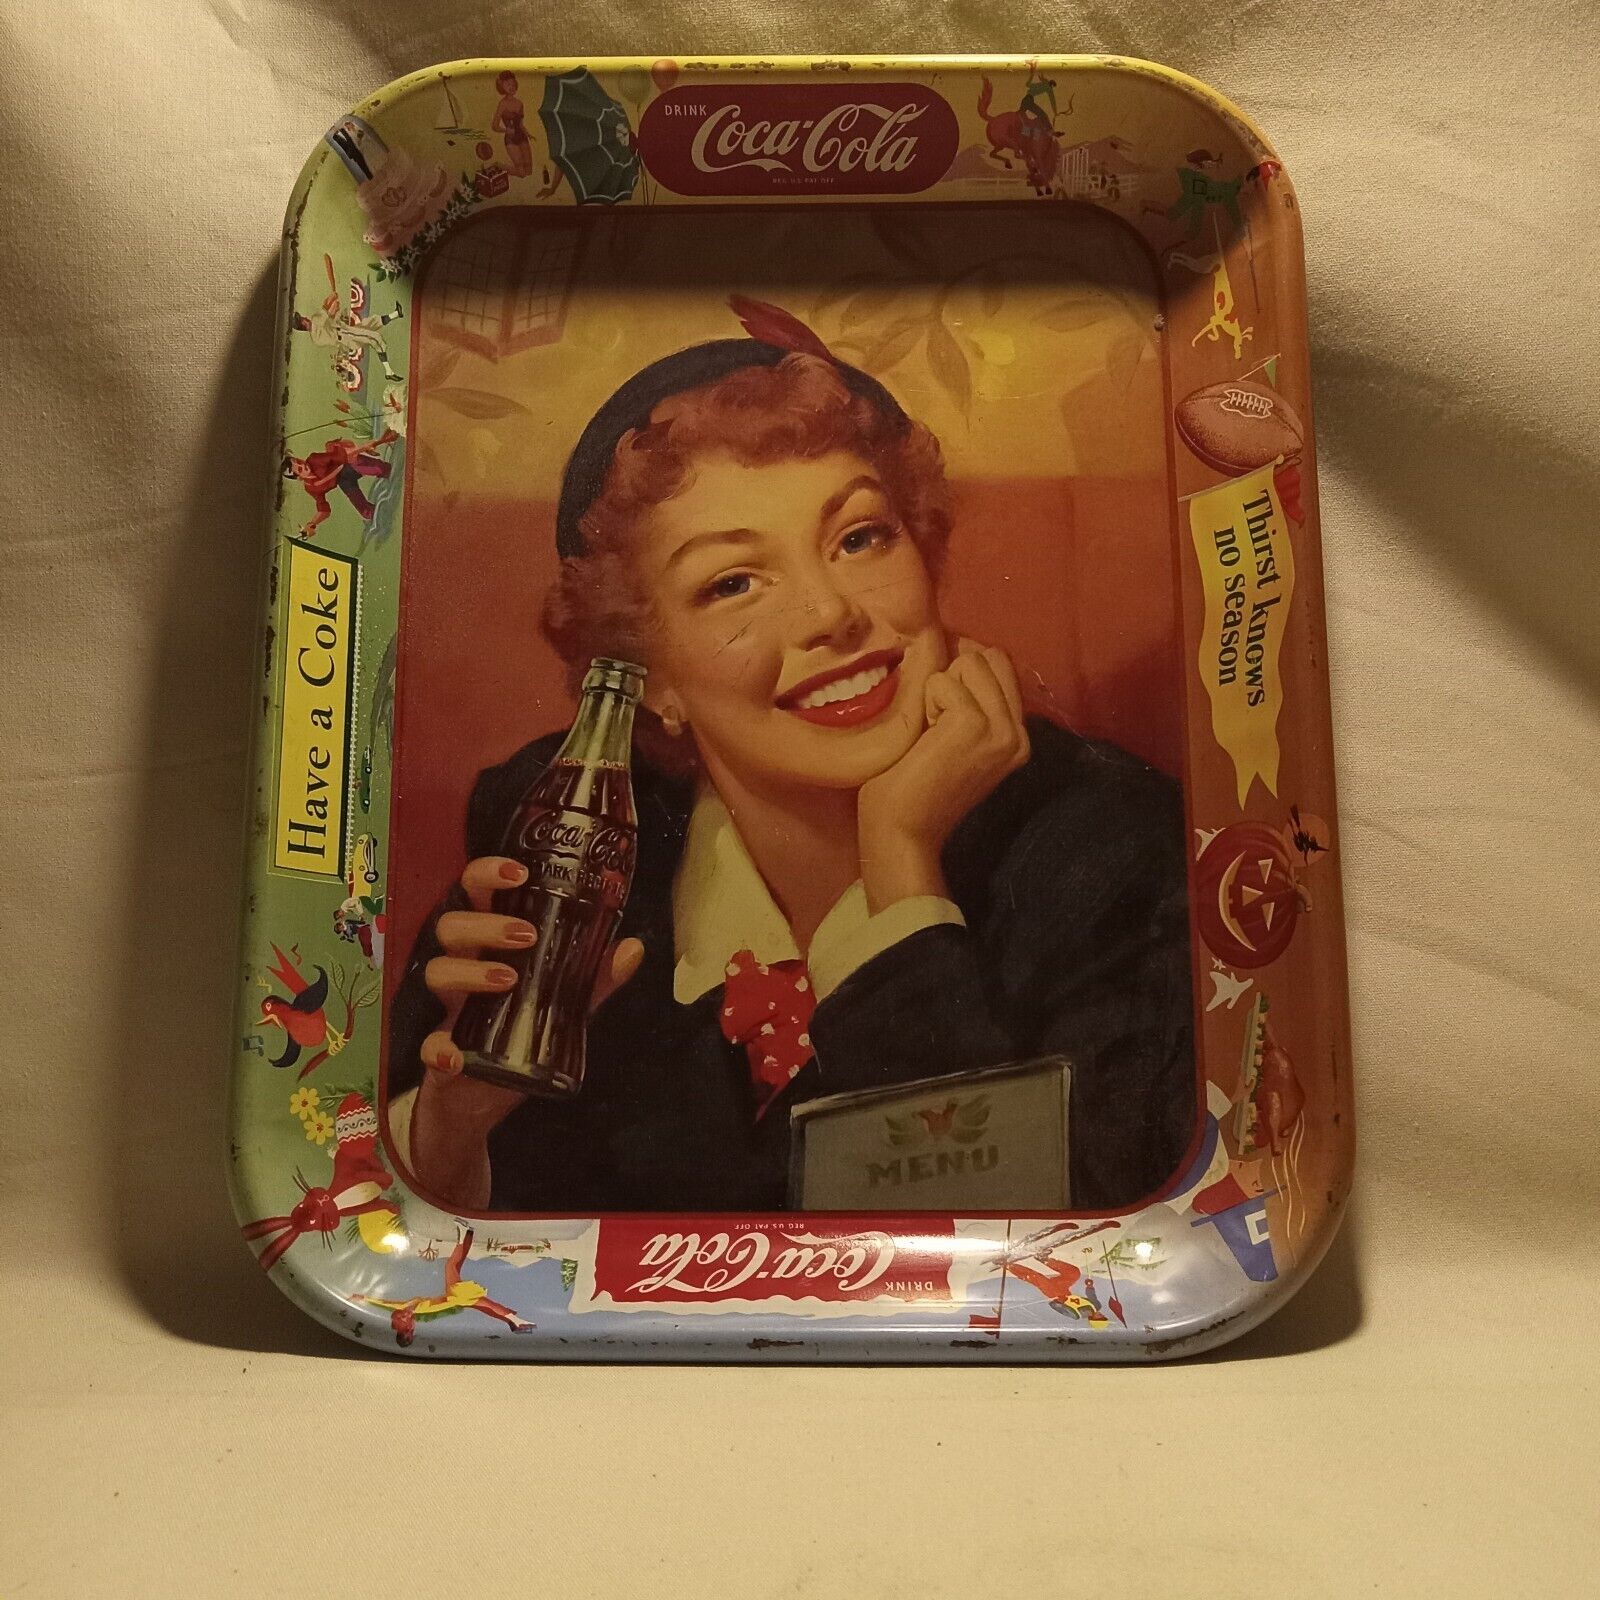 Rare 1950's Vintage Coca-Cla Metal Serving Tray